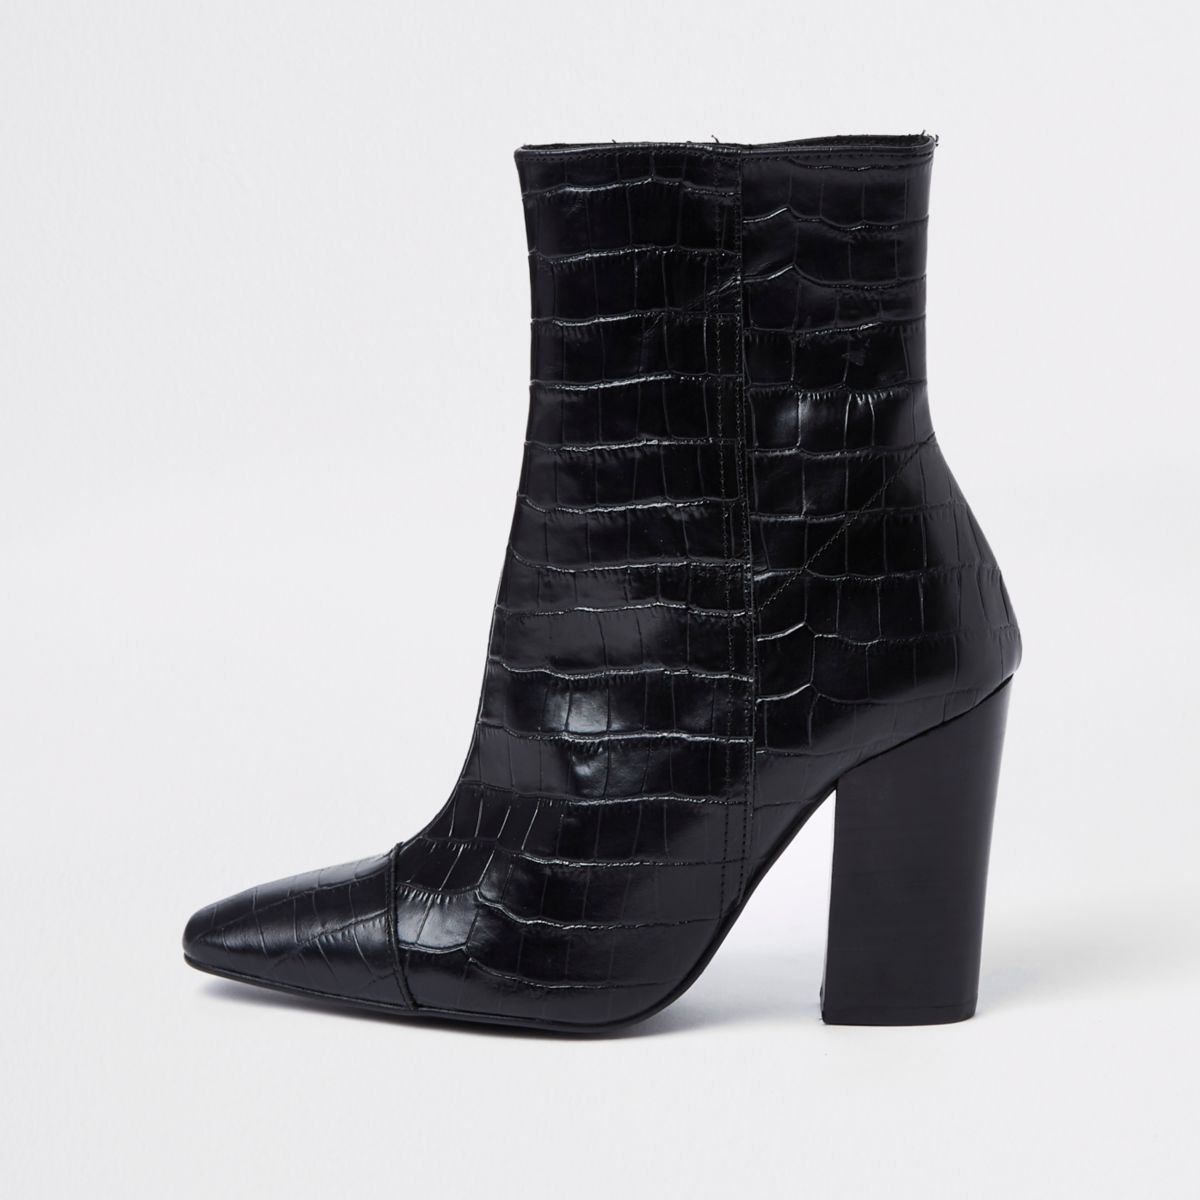 Black croc embossed block heel boots